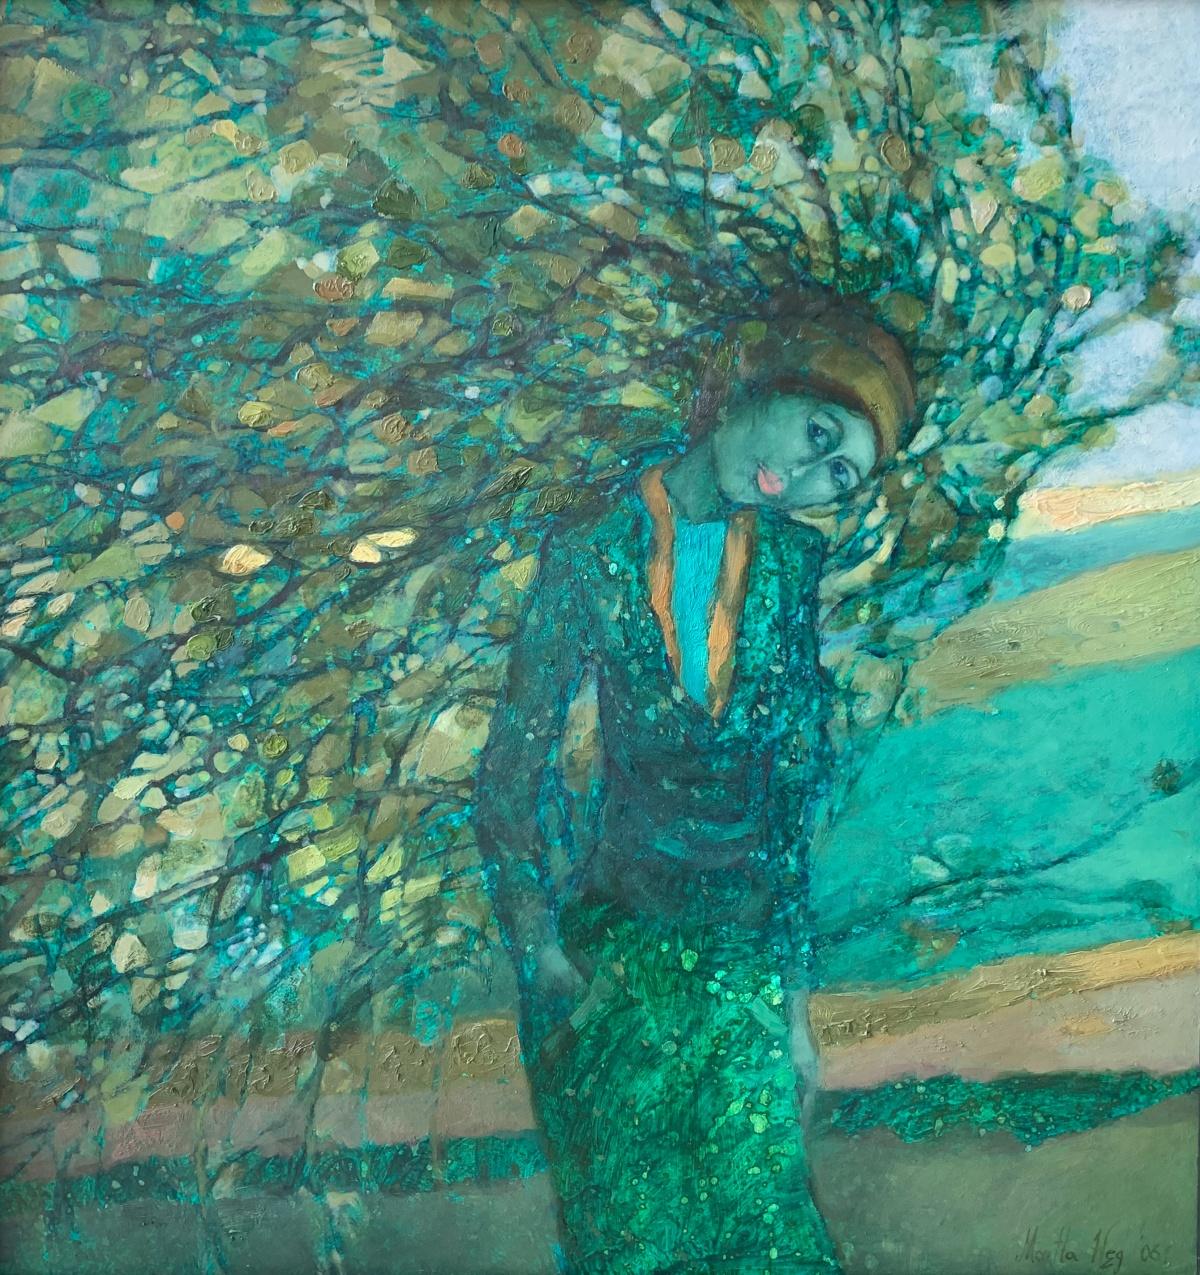 Figurative Painting Martta Węg - Femme de la forêt - Peinture à l'huile figurative, portrait, artiste monochrome, polonais